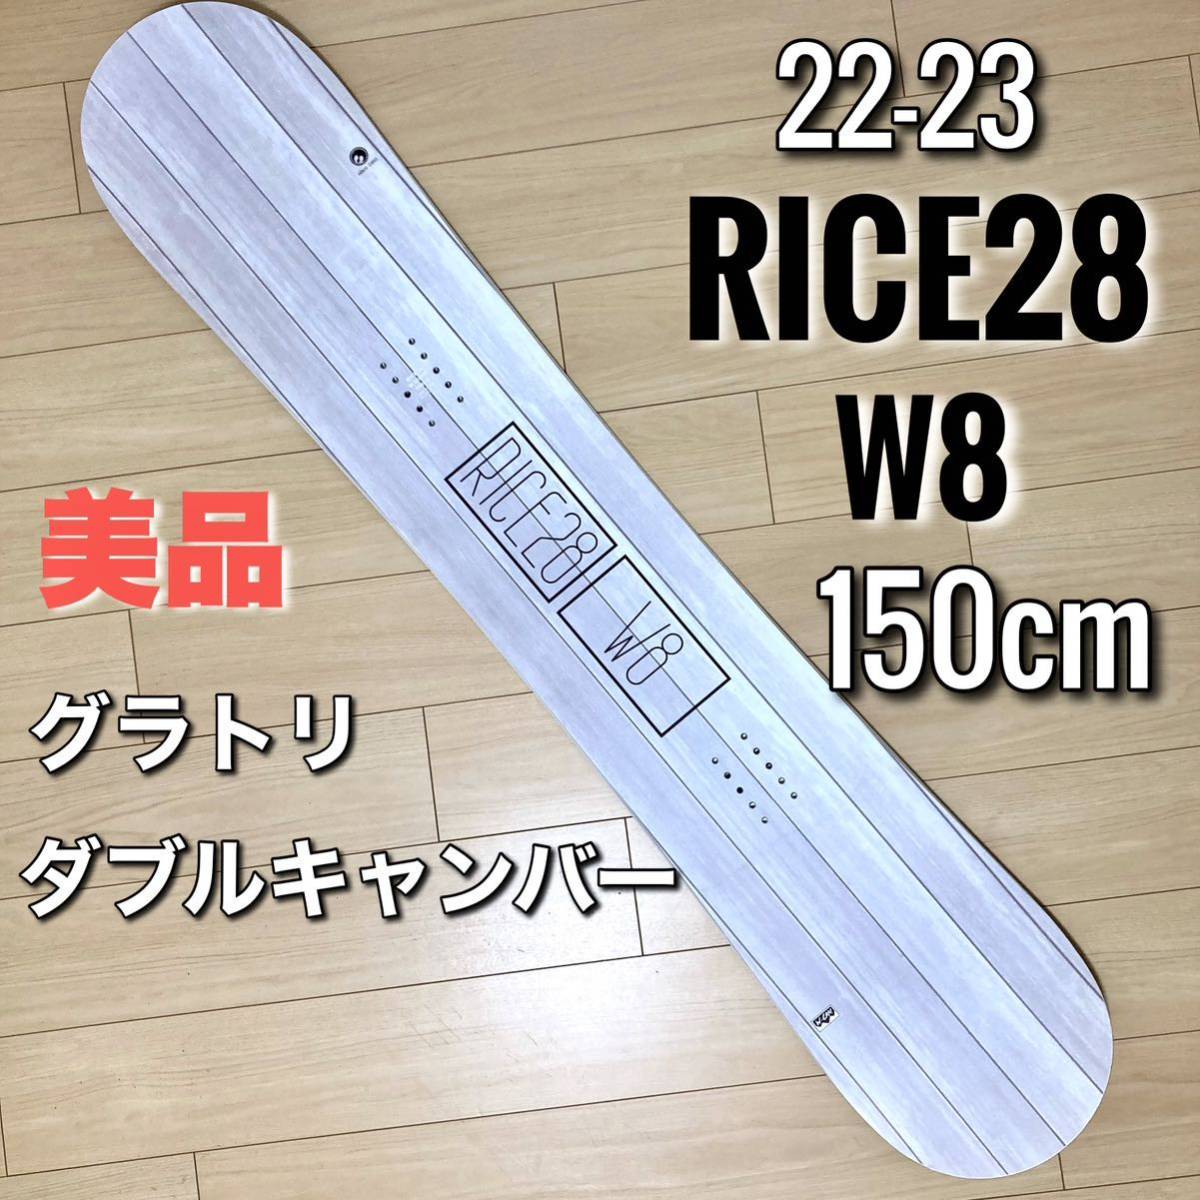 RICE28 RT6 23-24モデル 148cm - スノーボード